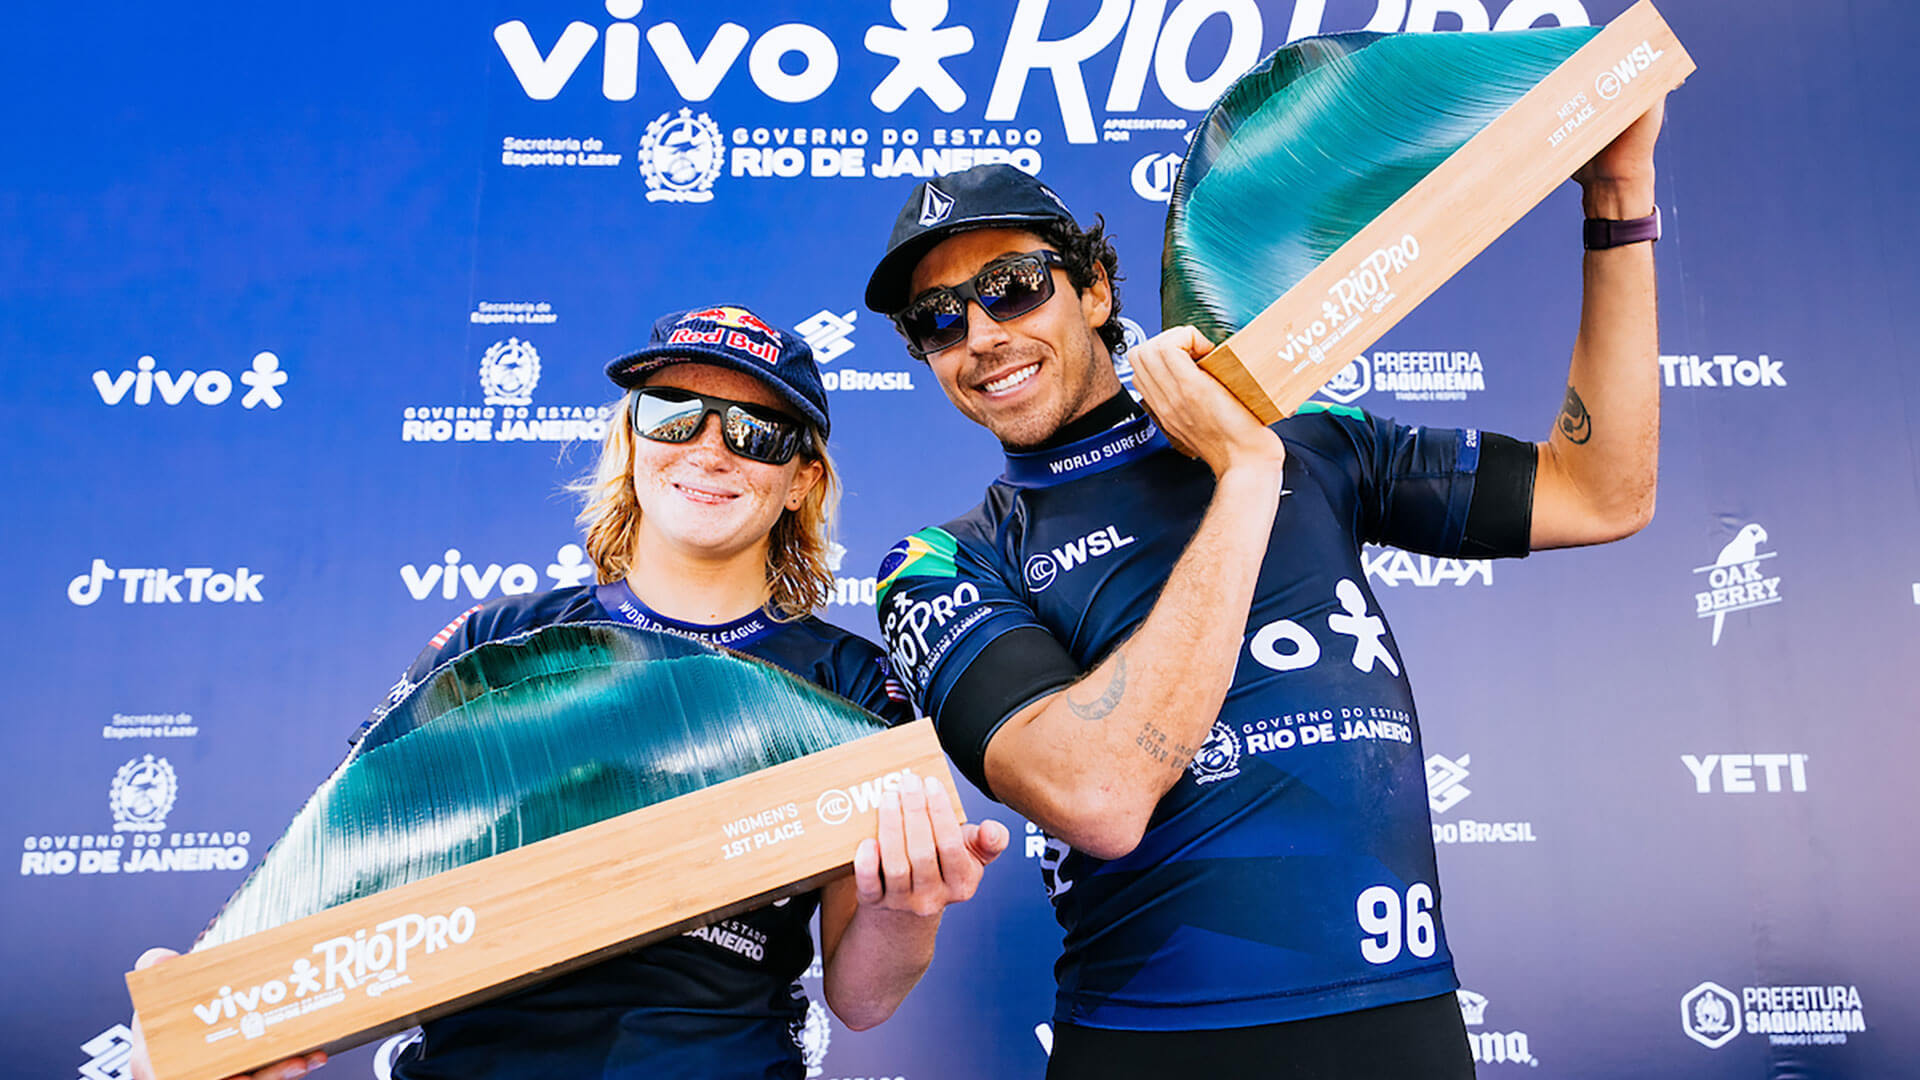 Caitlin Simmers and Yago Dora win the ViVo Rio Pro